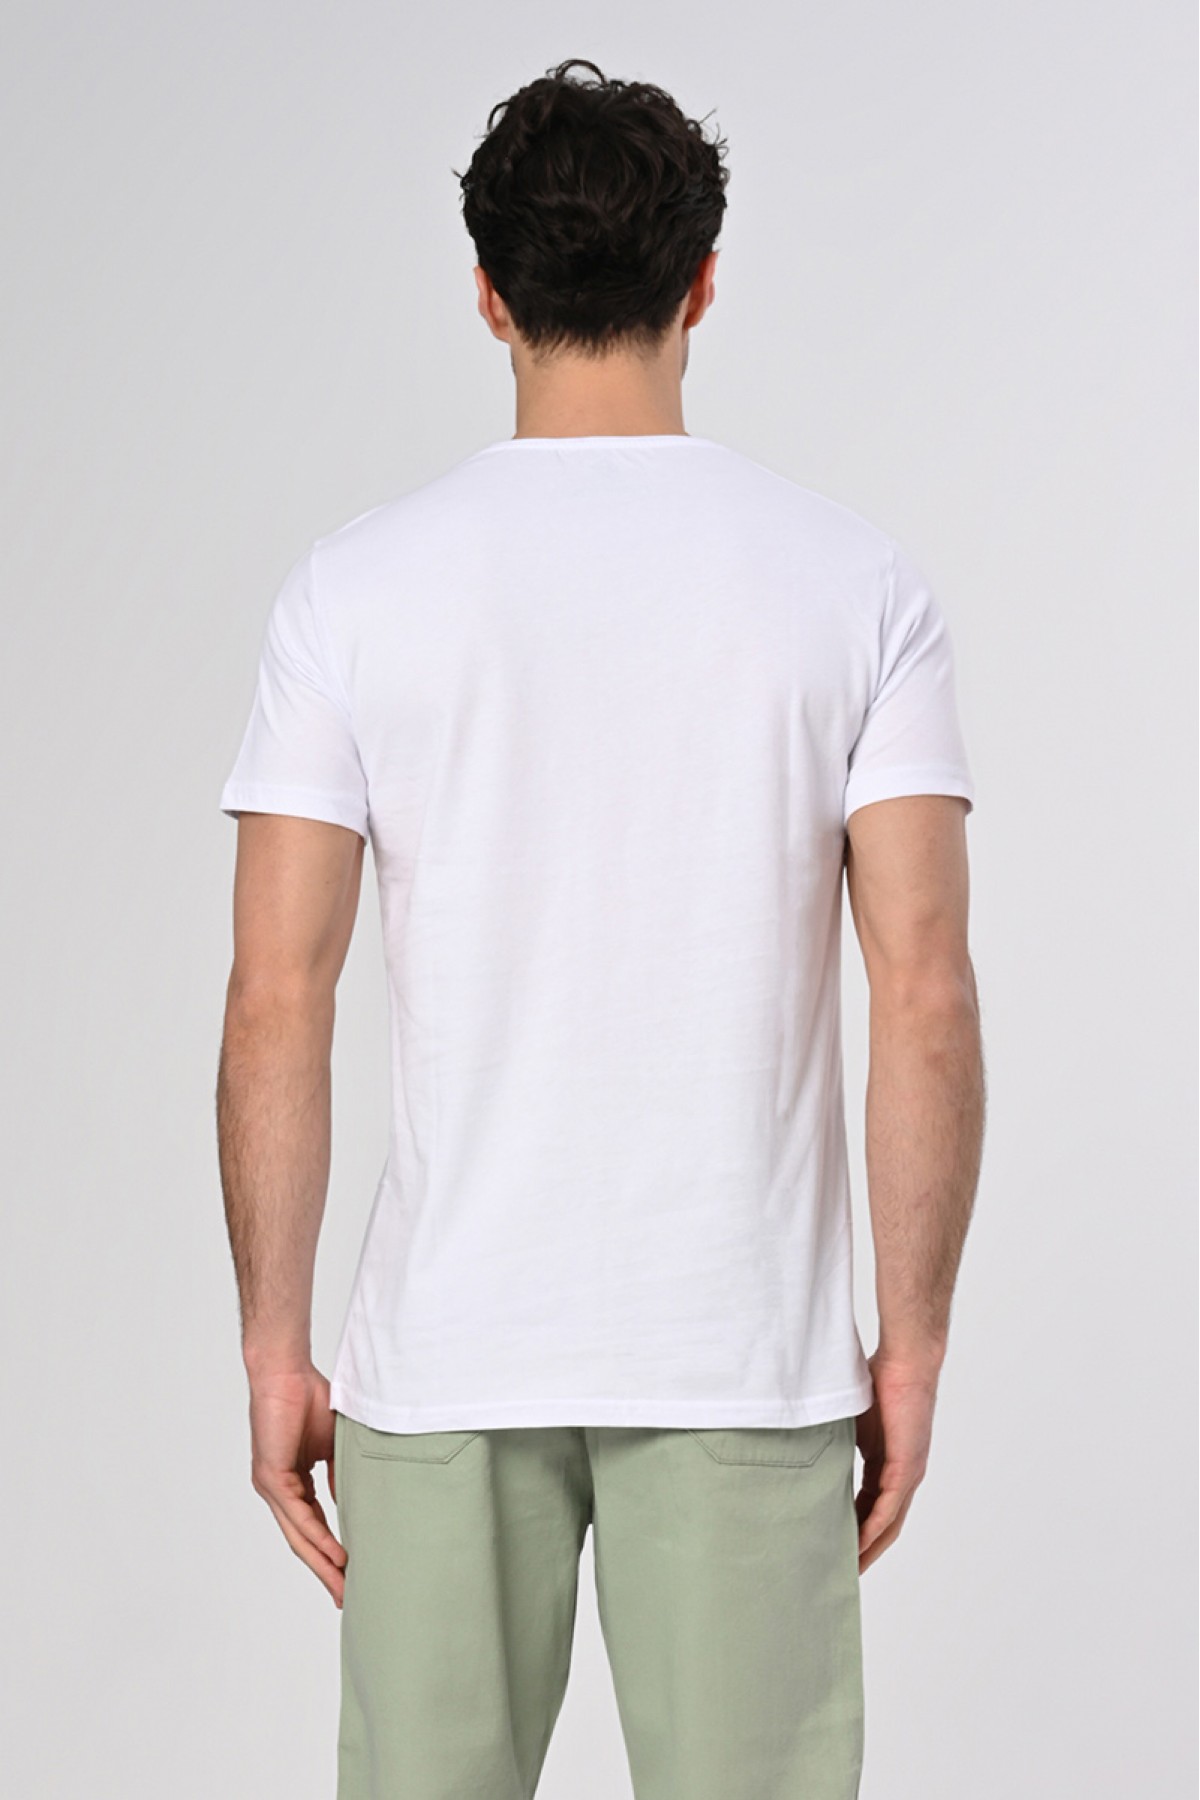 Halat Tasarım Pamuk Beyaz T-shirt